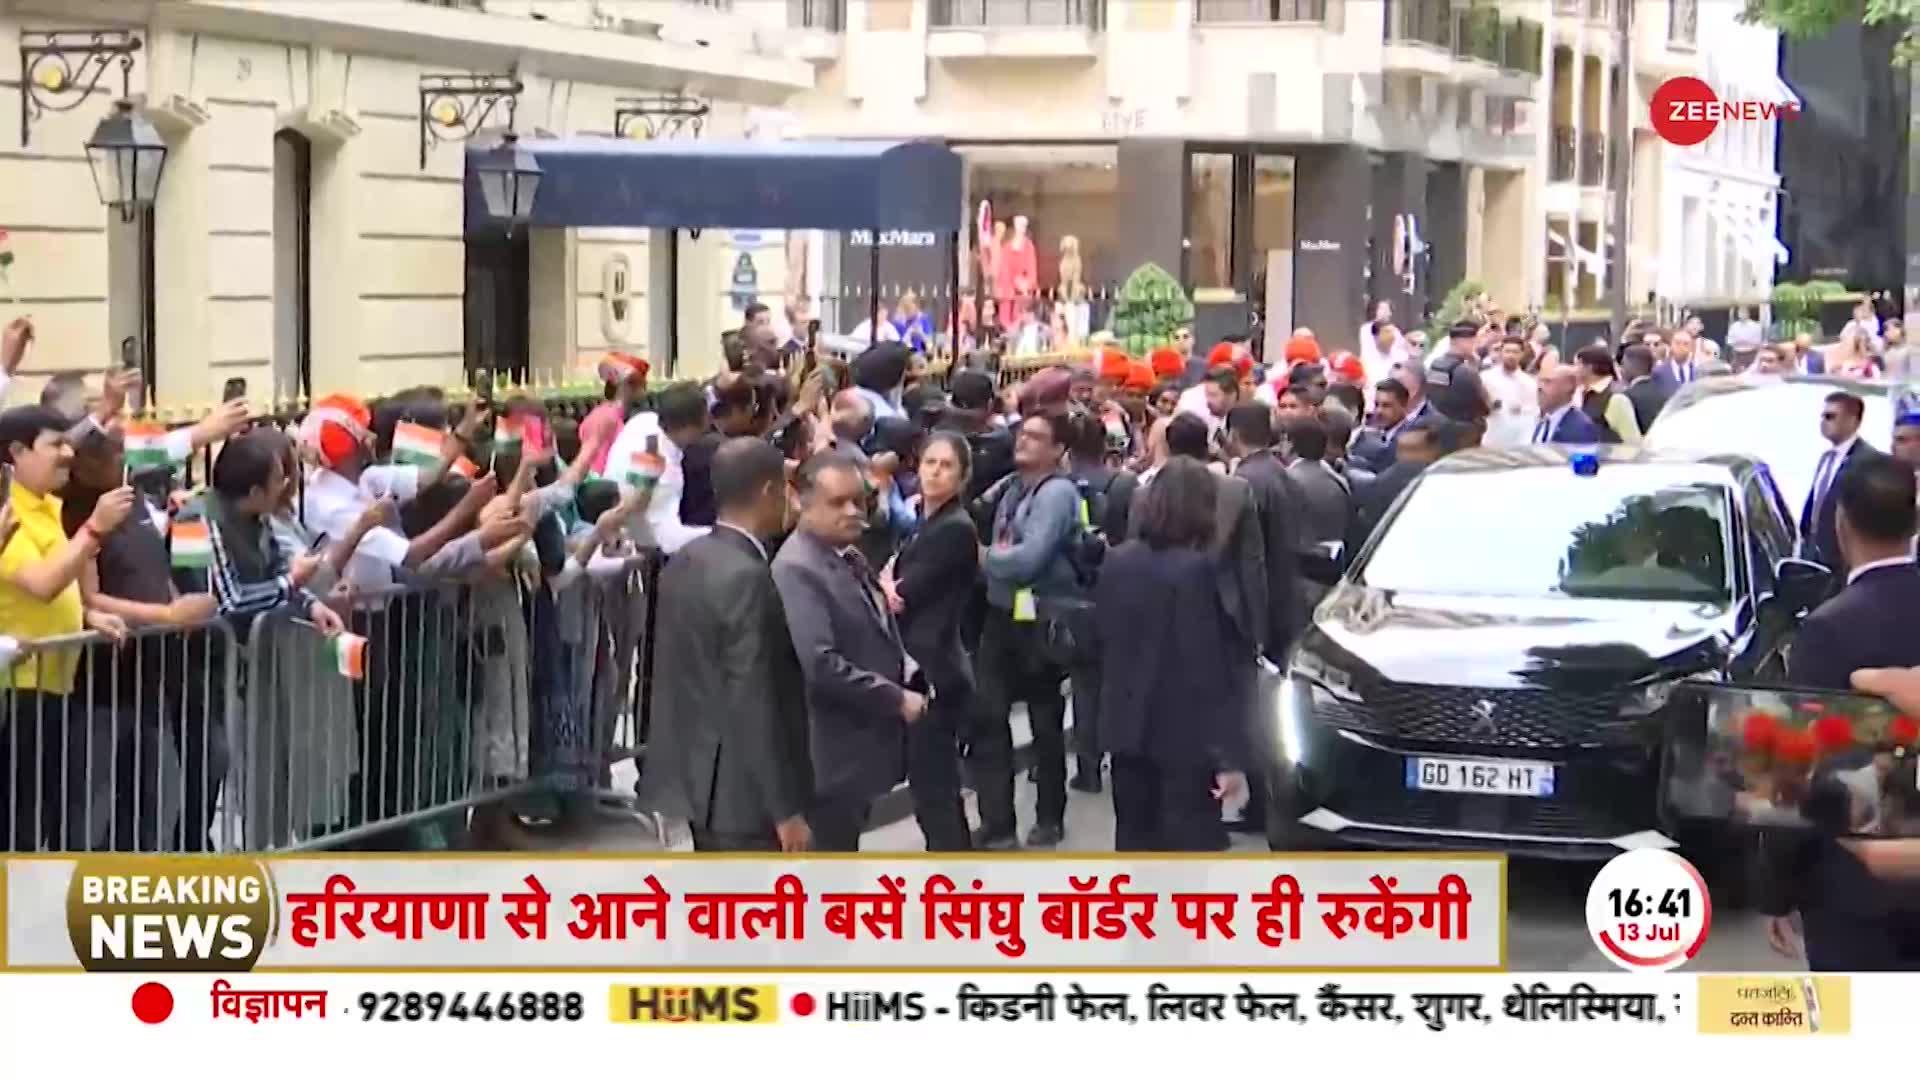 PM Modi France visit: बड़ी कंपनियों के CEO के मिलेंगे Modi और Emmanuel Macron। Bastille Day Parade